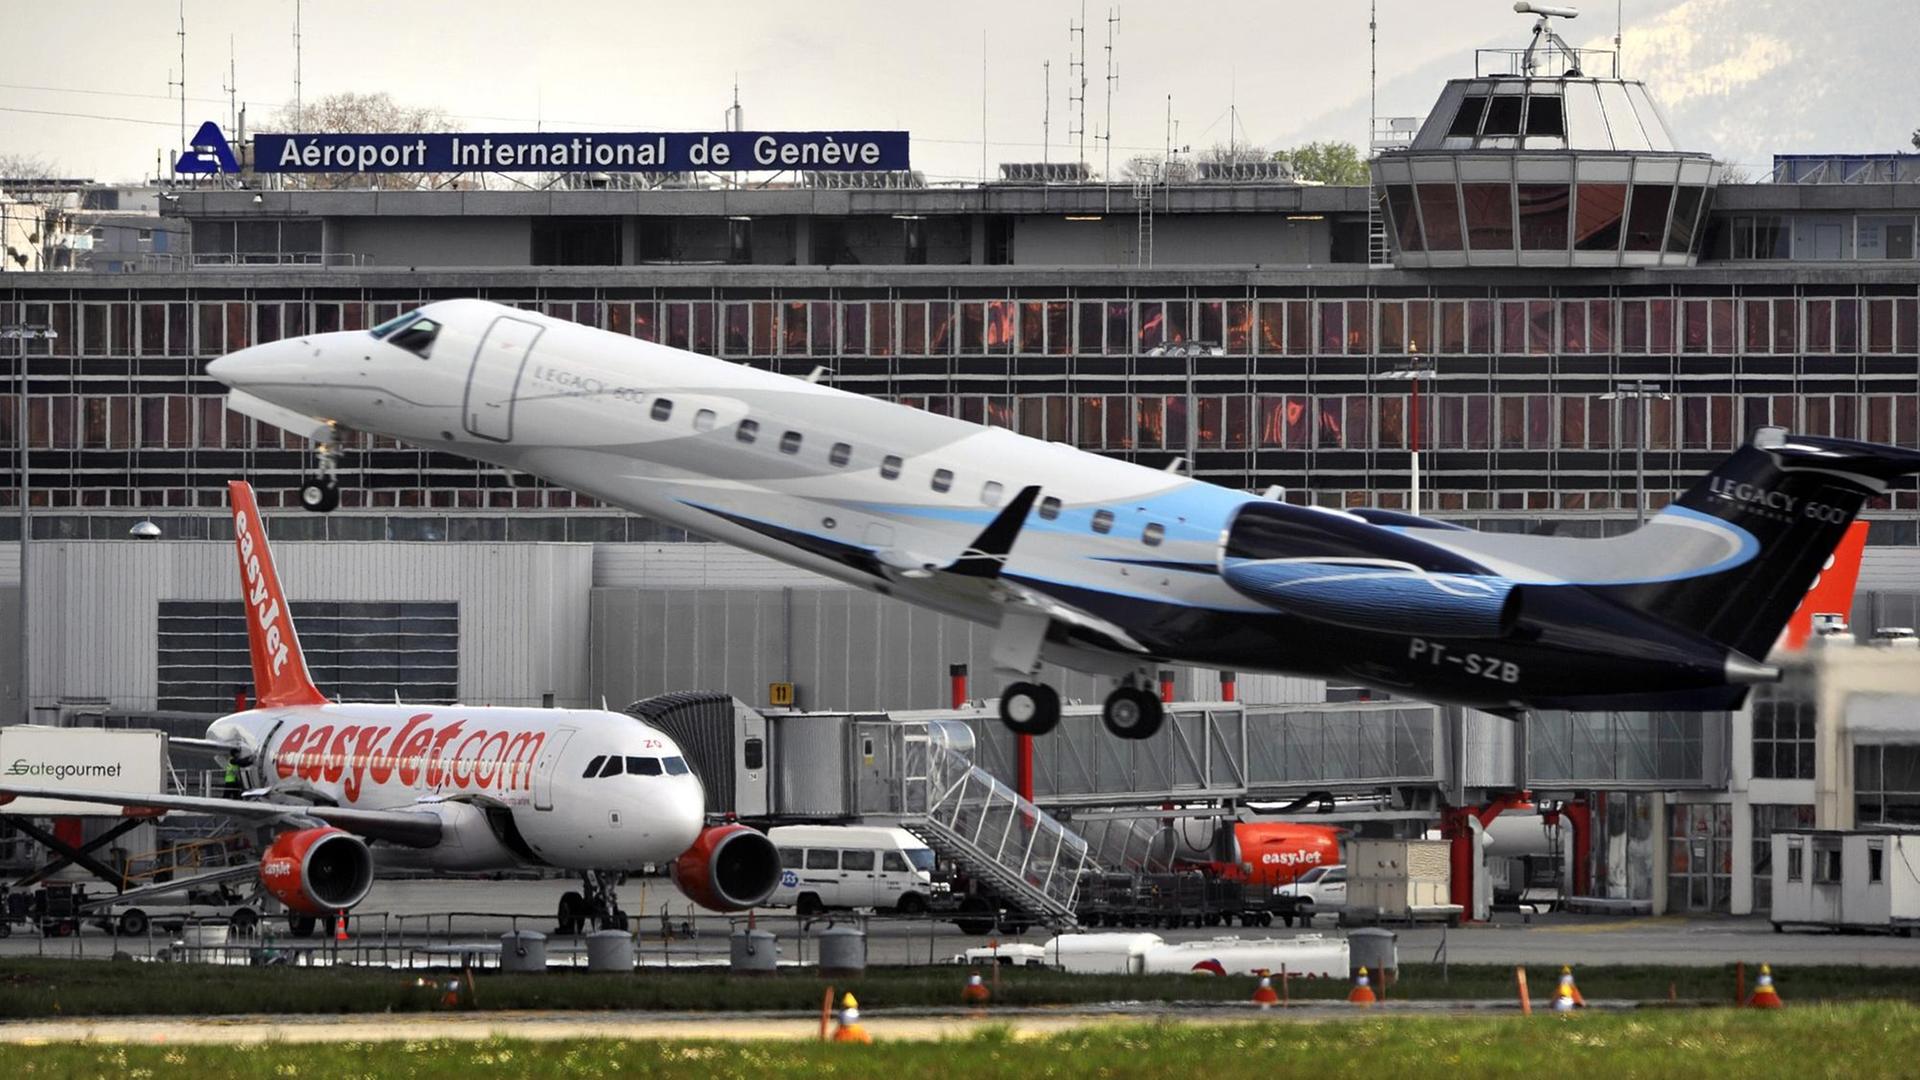 Blick auf ein Geschäftsflugzeug, das vor dem Gebäude des Internationalen Flughafens Genf abhebt.